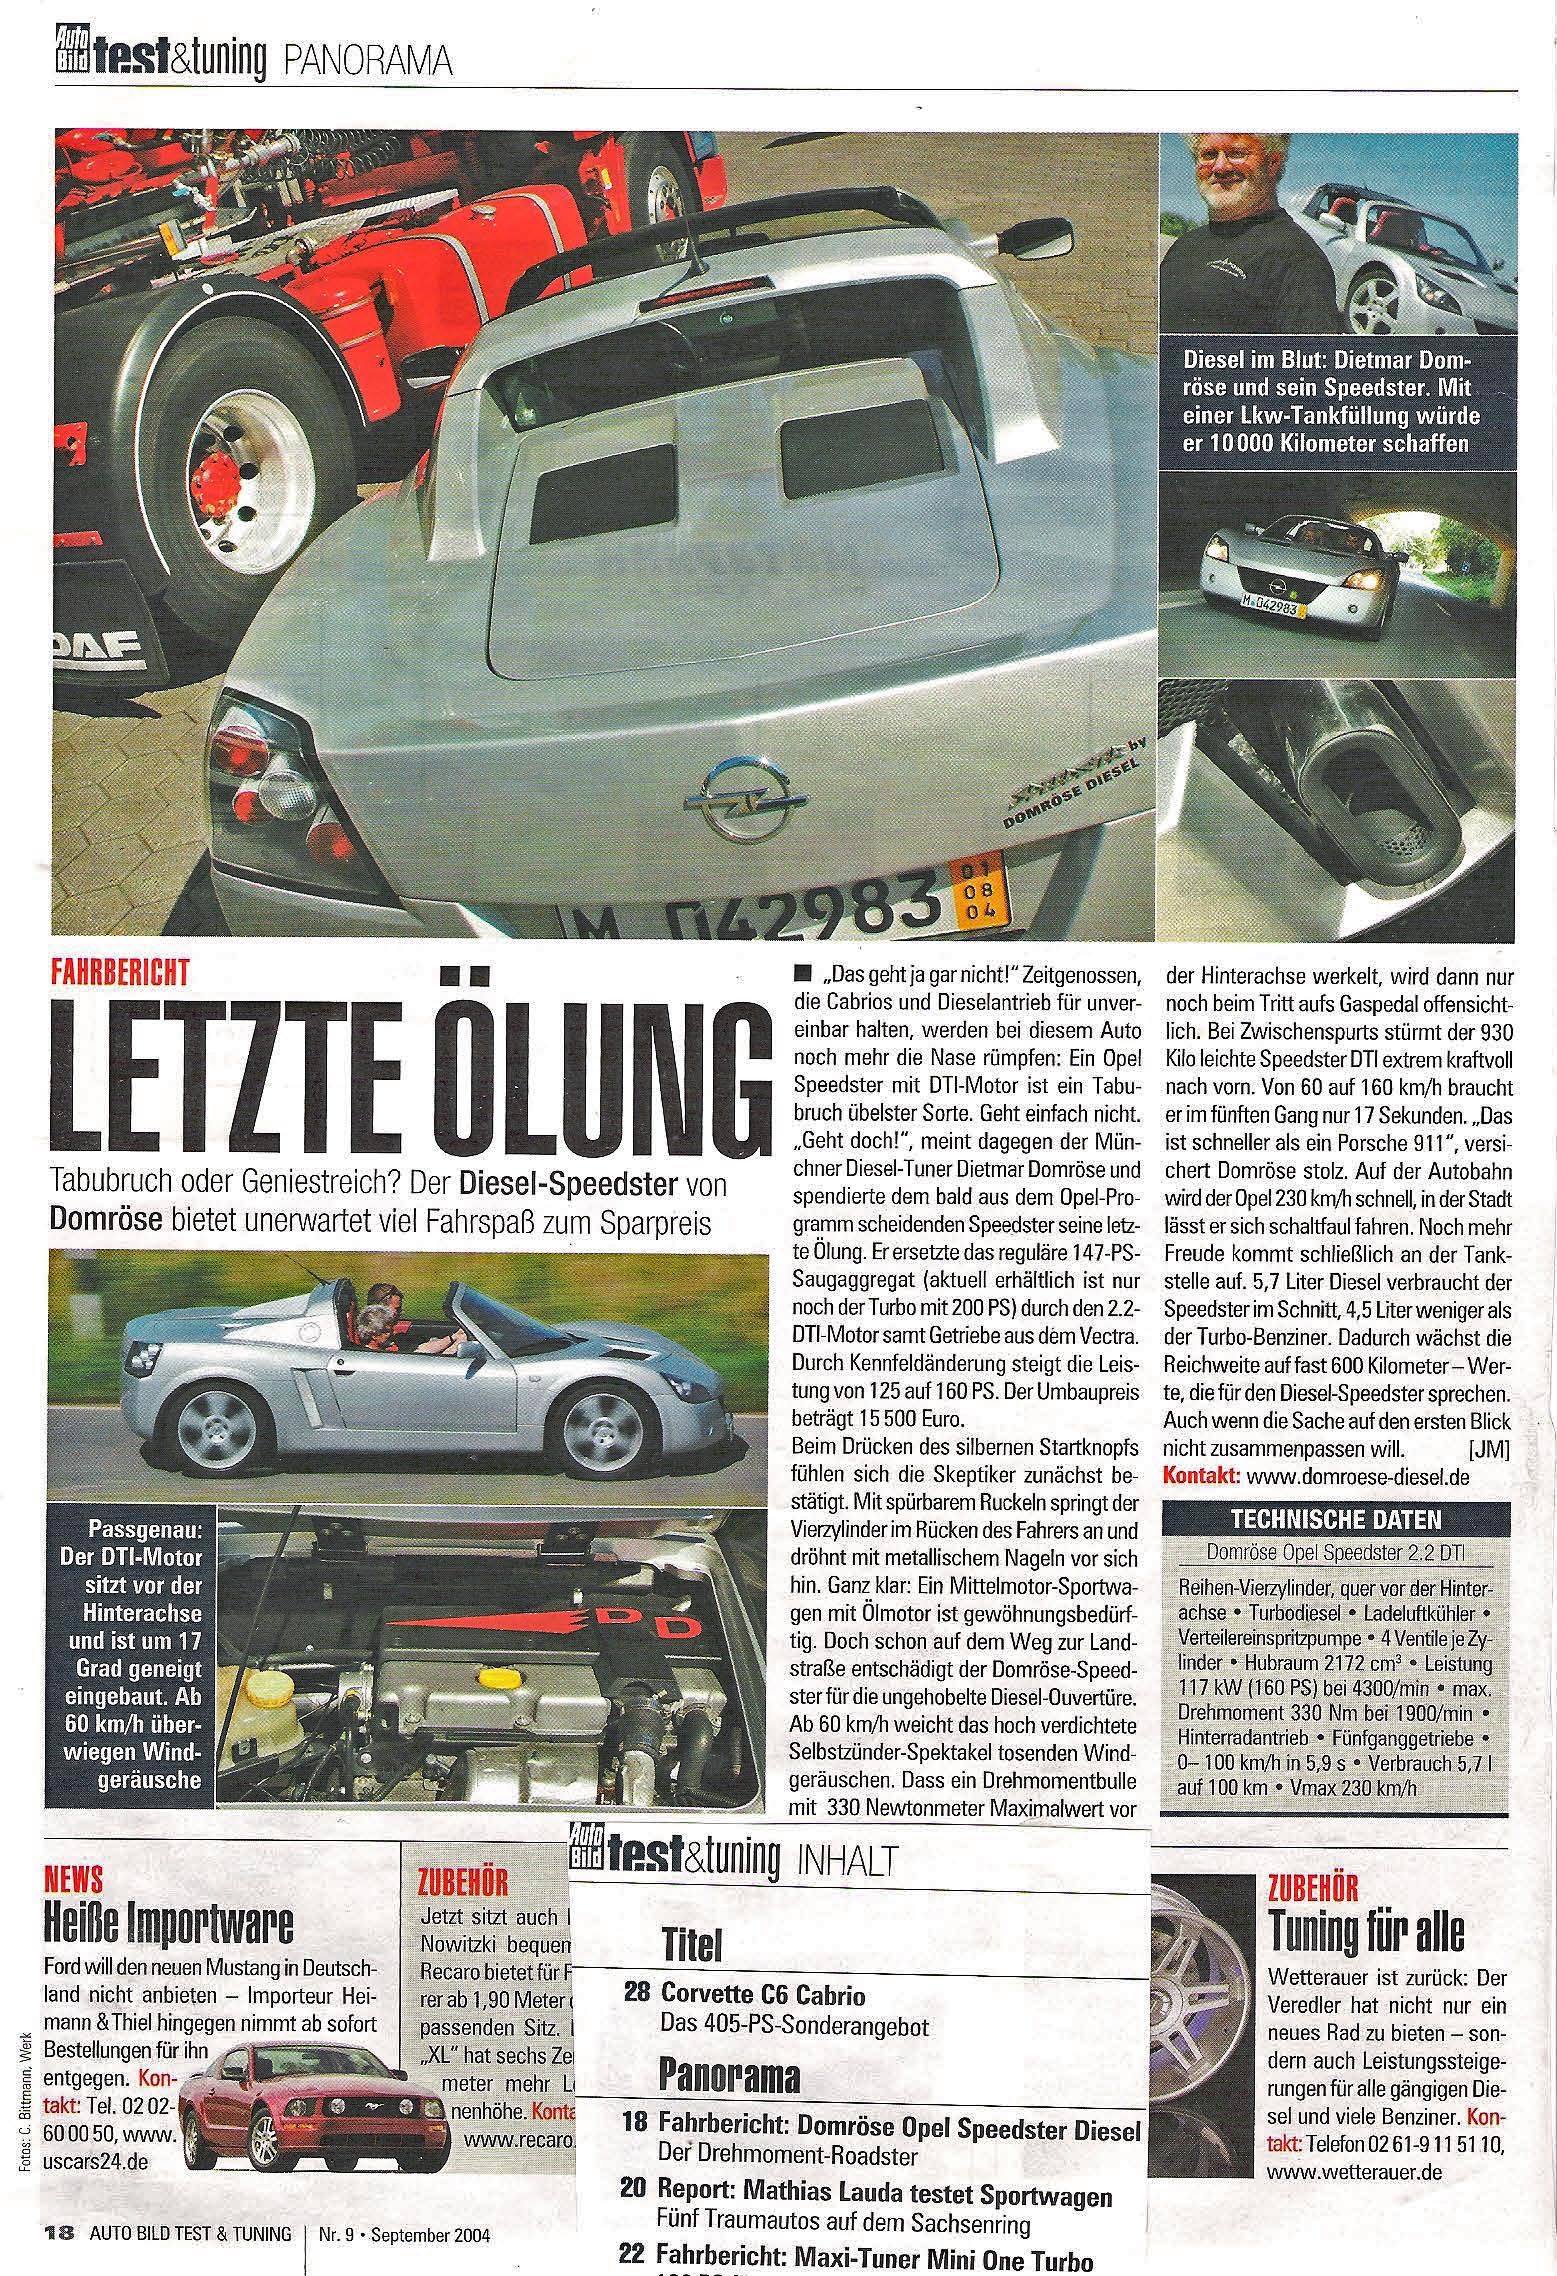 Test & Tuning Oktober 2004 - Opel Speedster, "Letzte Ölung" über Domröse Diesel